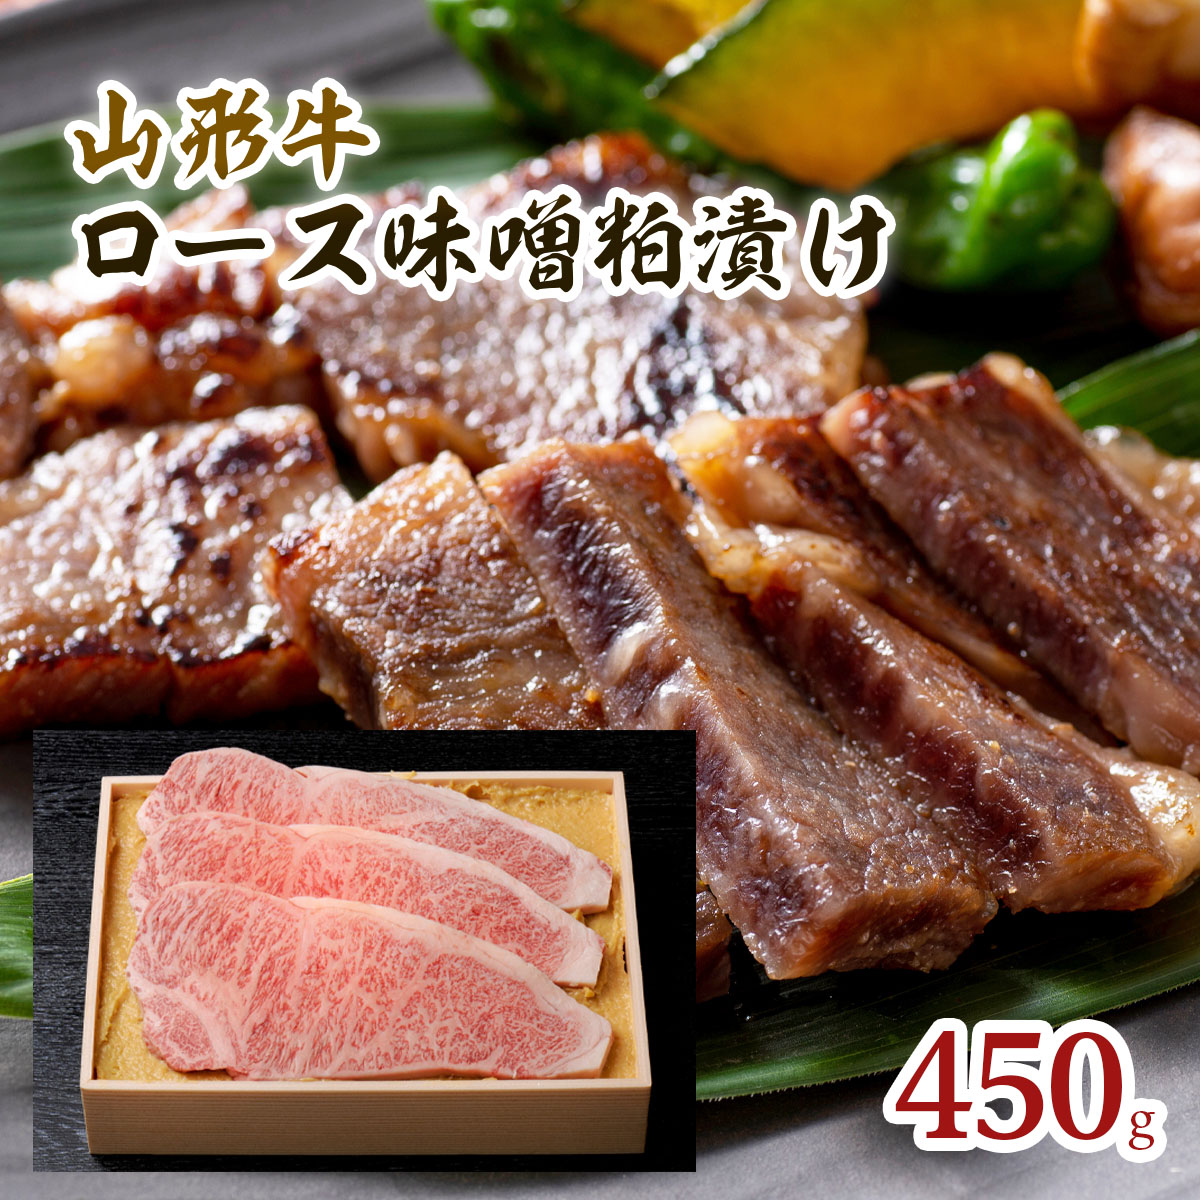 山形牛ロース味噌粕漬け 450g FY18-074